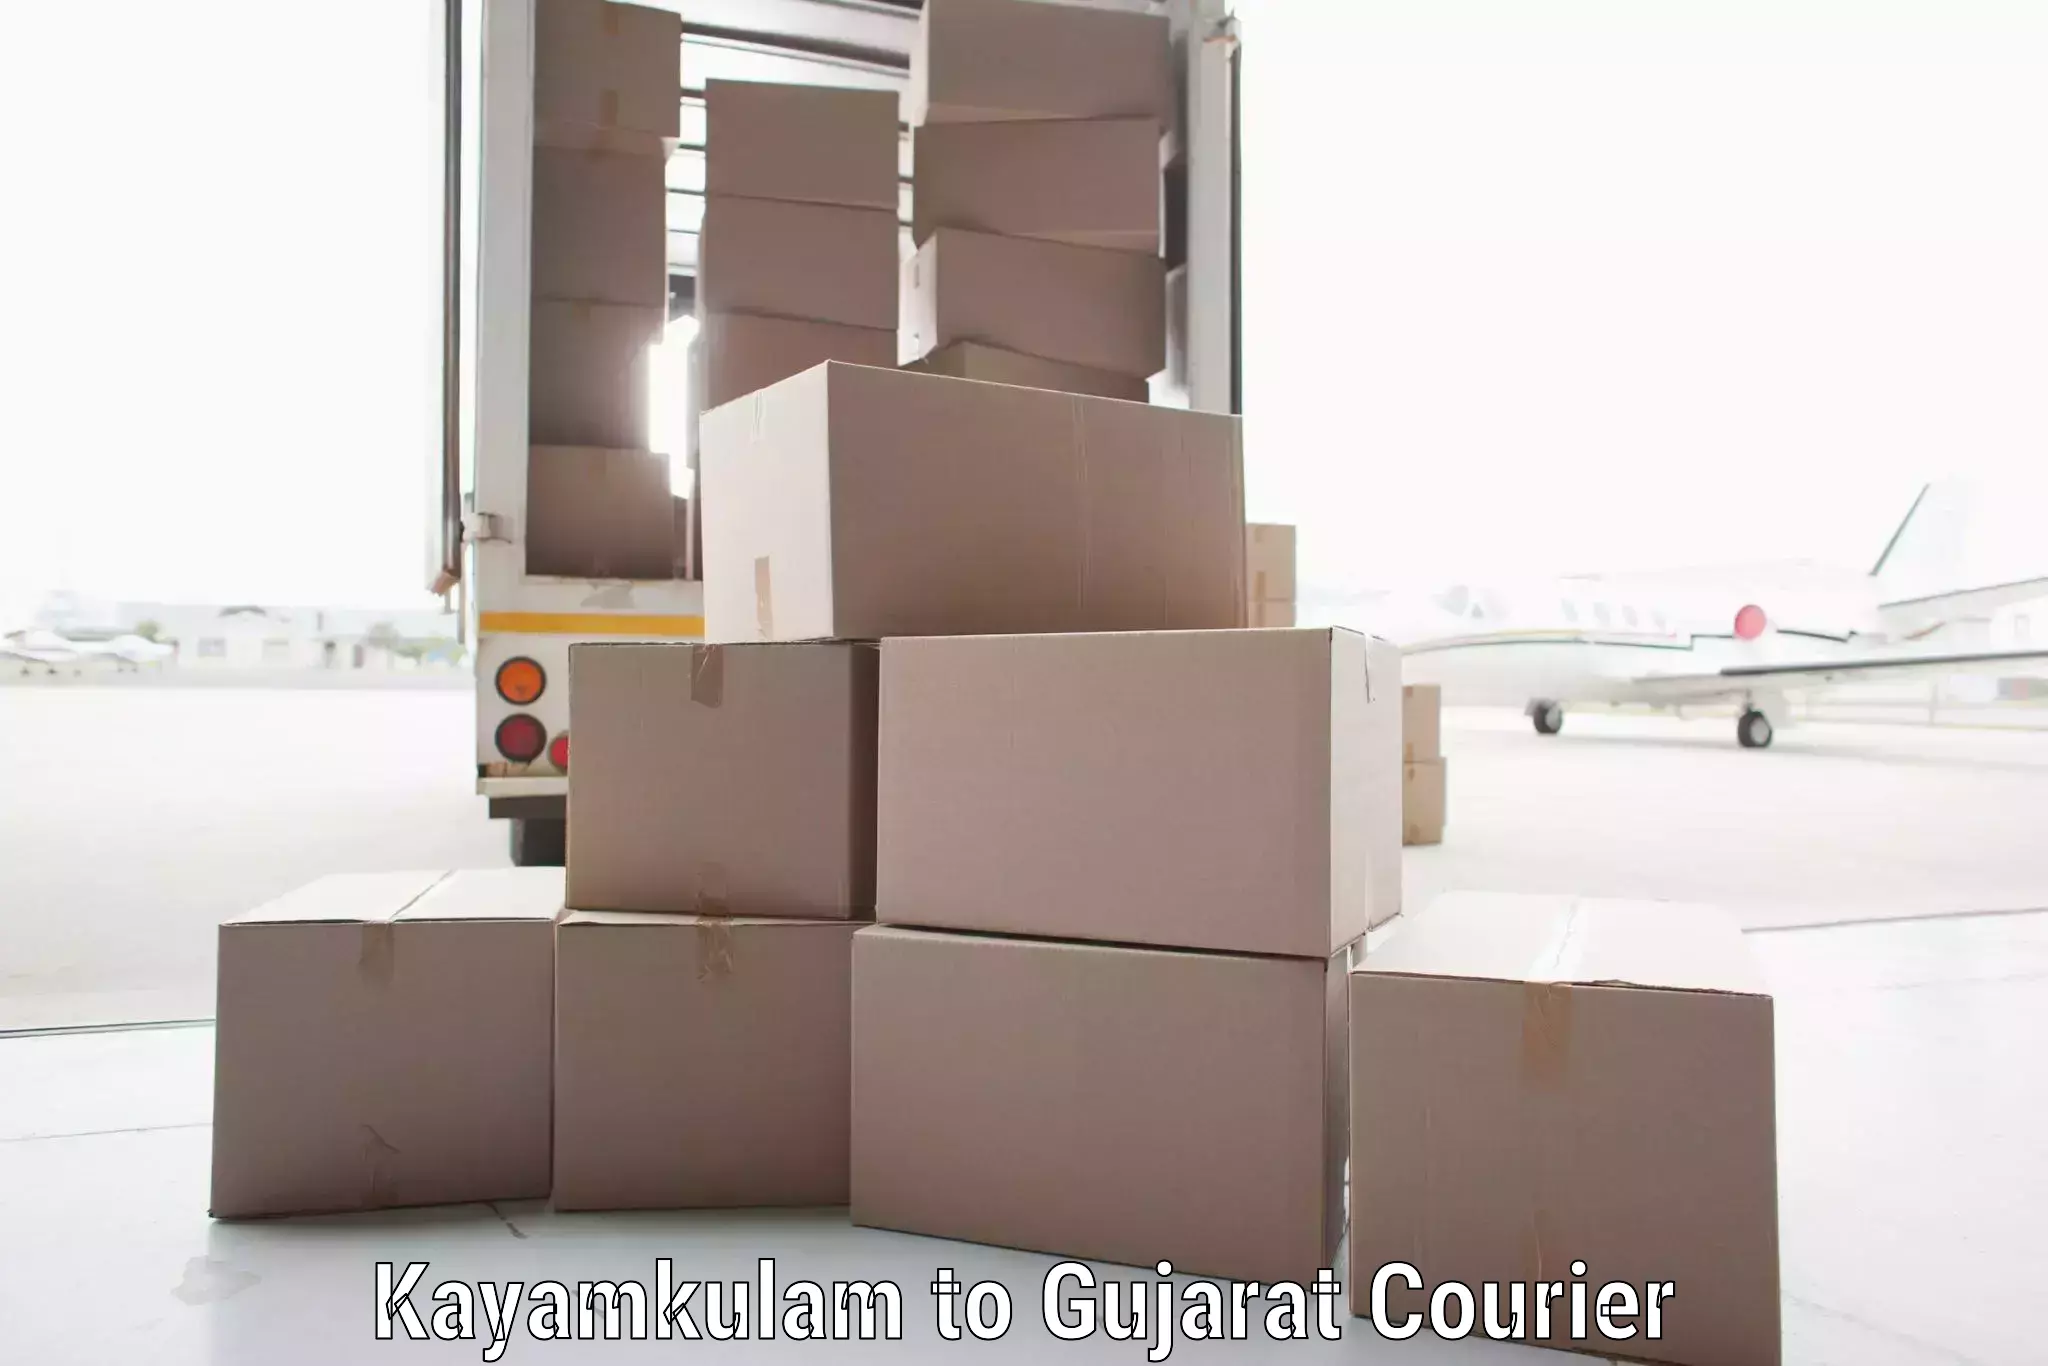 Nationwide shipping capabilities Kayamkulam to Ahwa